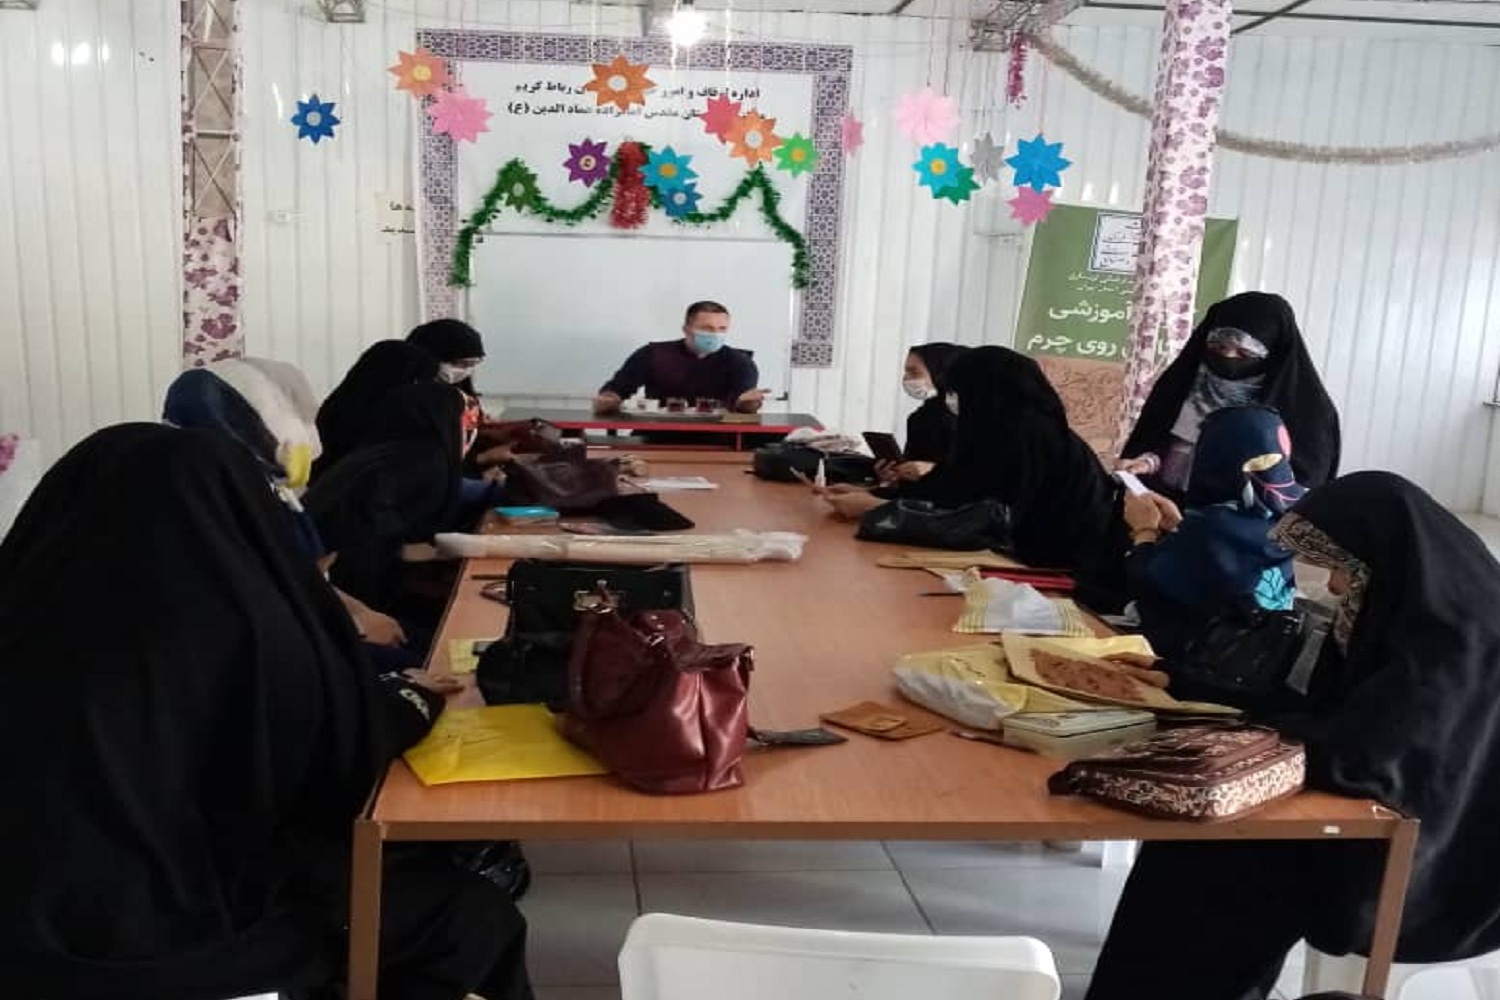 پایان دوره آموزش حکاکی روی چرم در تهران